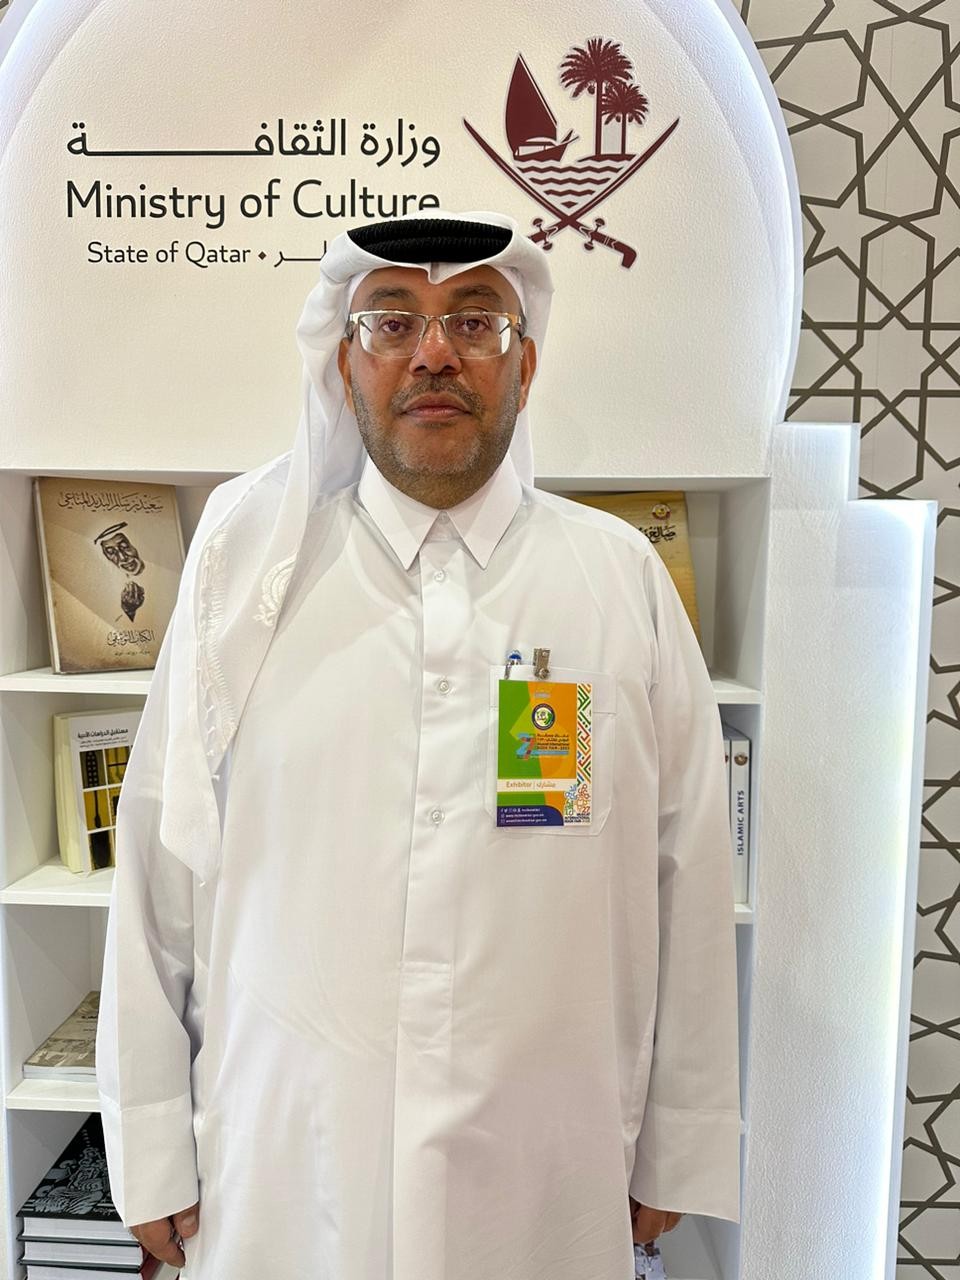 عبدالكريم الحميدي المشرف على جناح وزارة الثقافة لدولة قطر.jfif